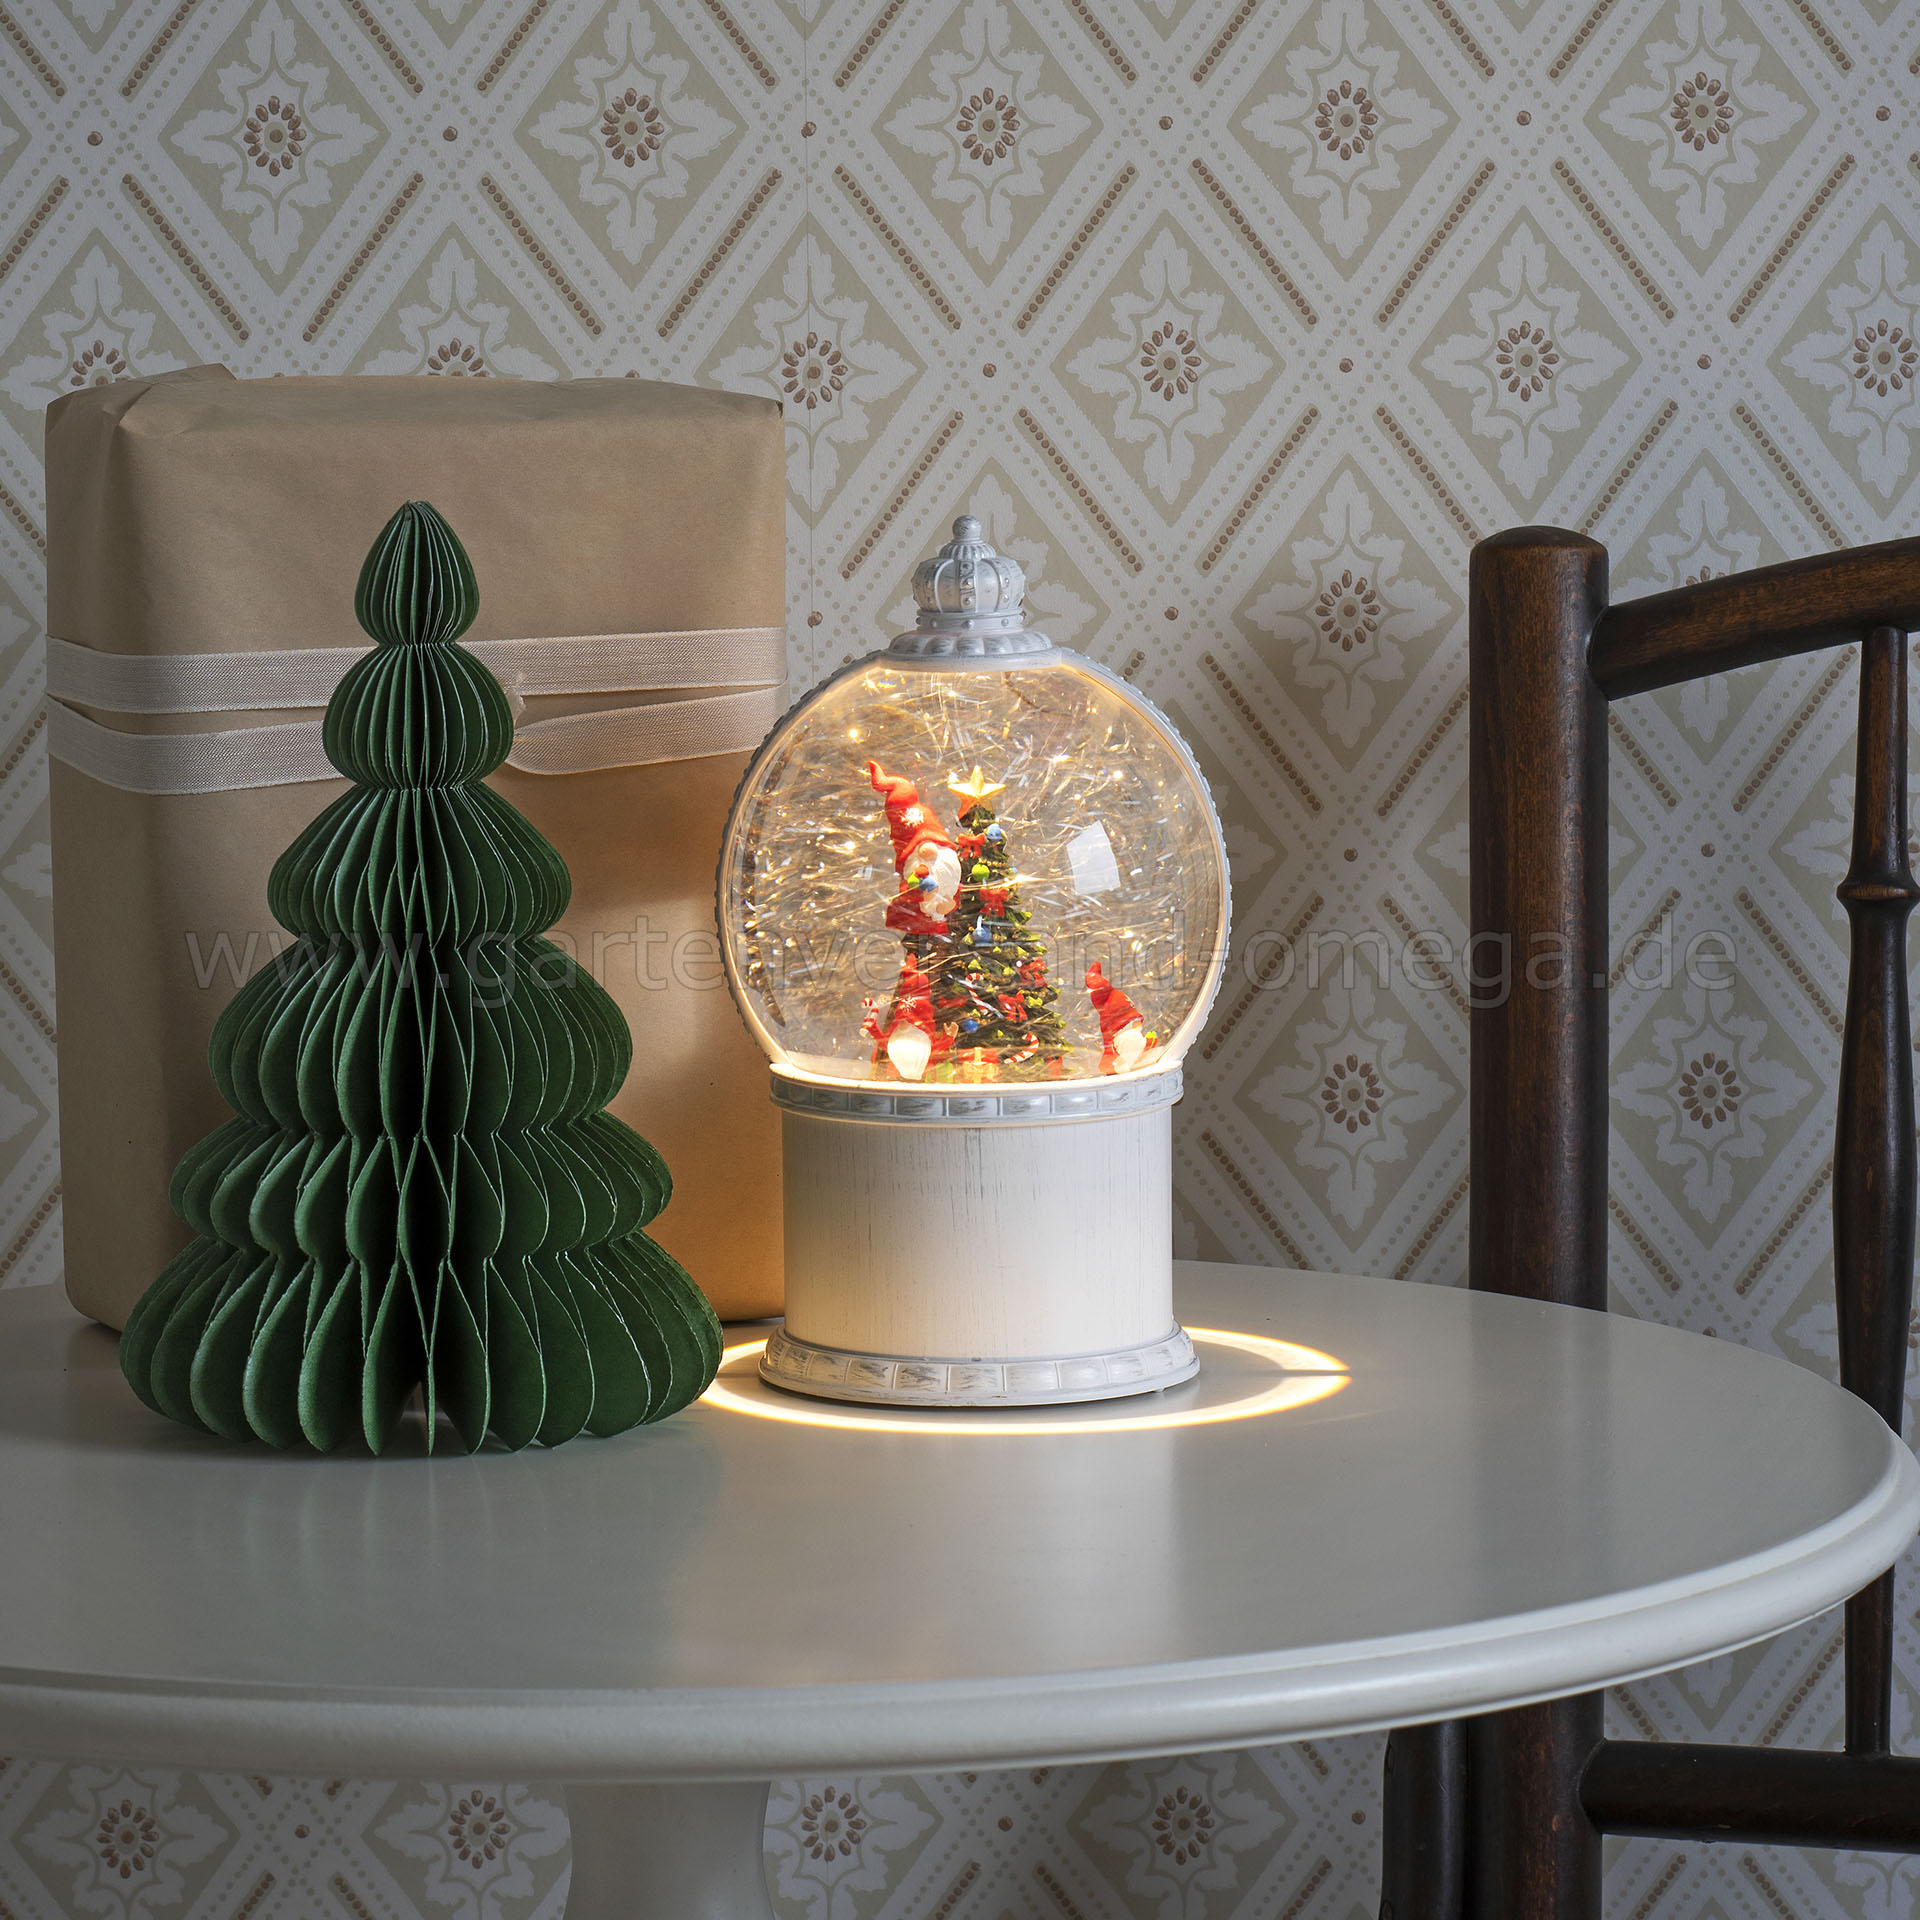 Kugellaterne Weihnachtsbeleuchtung LED Christbaum - LED-Kugellaterne Santas, Schneekugel-Dekoration mit wassergefüllte wie Weihnachtsbeleuchtung Schneekugel, Wichtel Weihnachtswichtel, Schneekugel-Laterne,